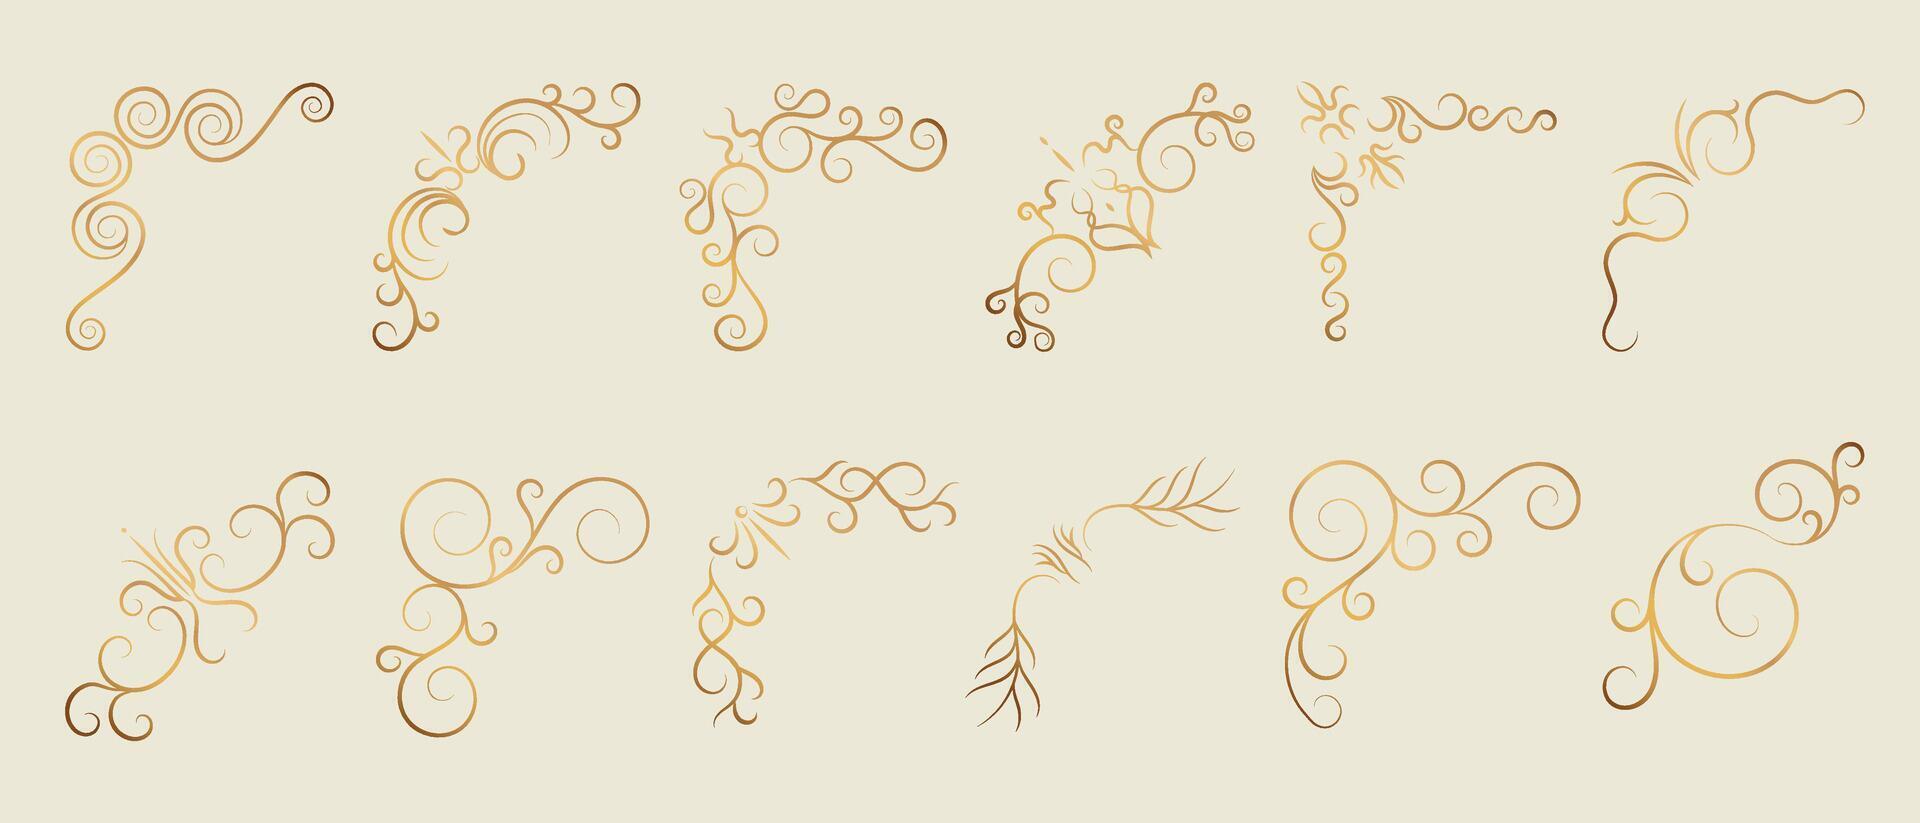 Luxury gold ornate invitation vector set. Collection of ornamental curls, dividers, border, frame, corner, components. Set of elegant design for wedding, menus, certificates, logo design, branding.